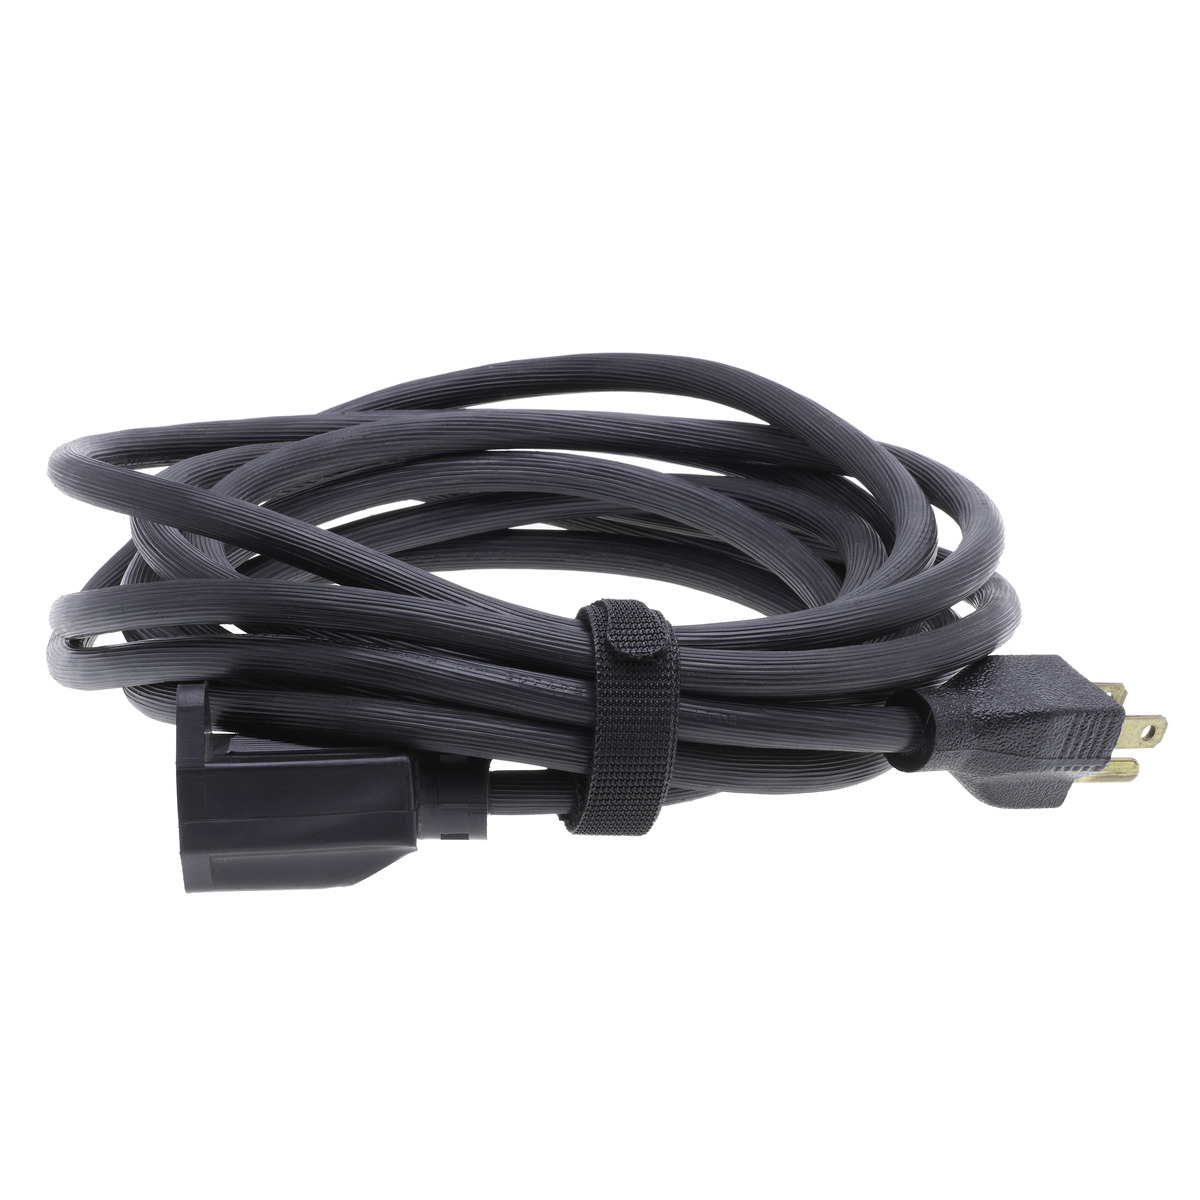 Cable Tie hook and loop fastener Black 12″ 10ft - NSI Industries